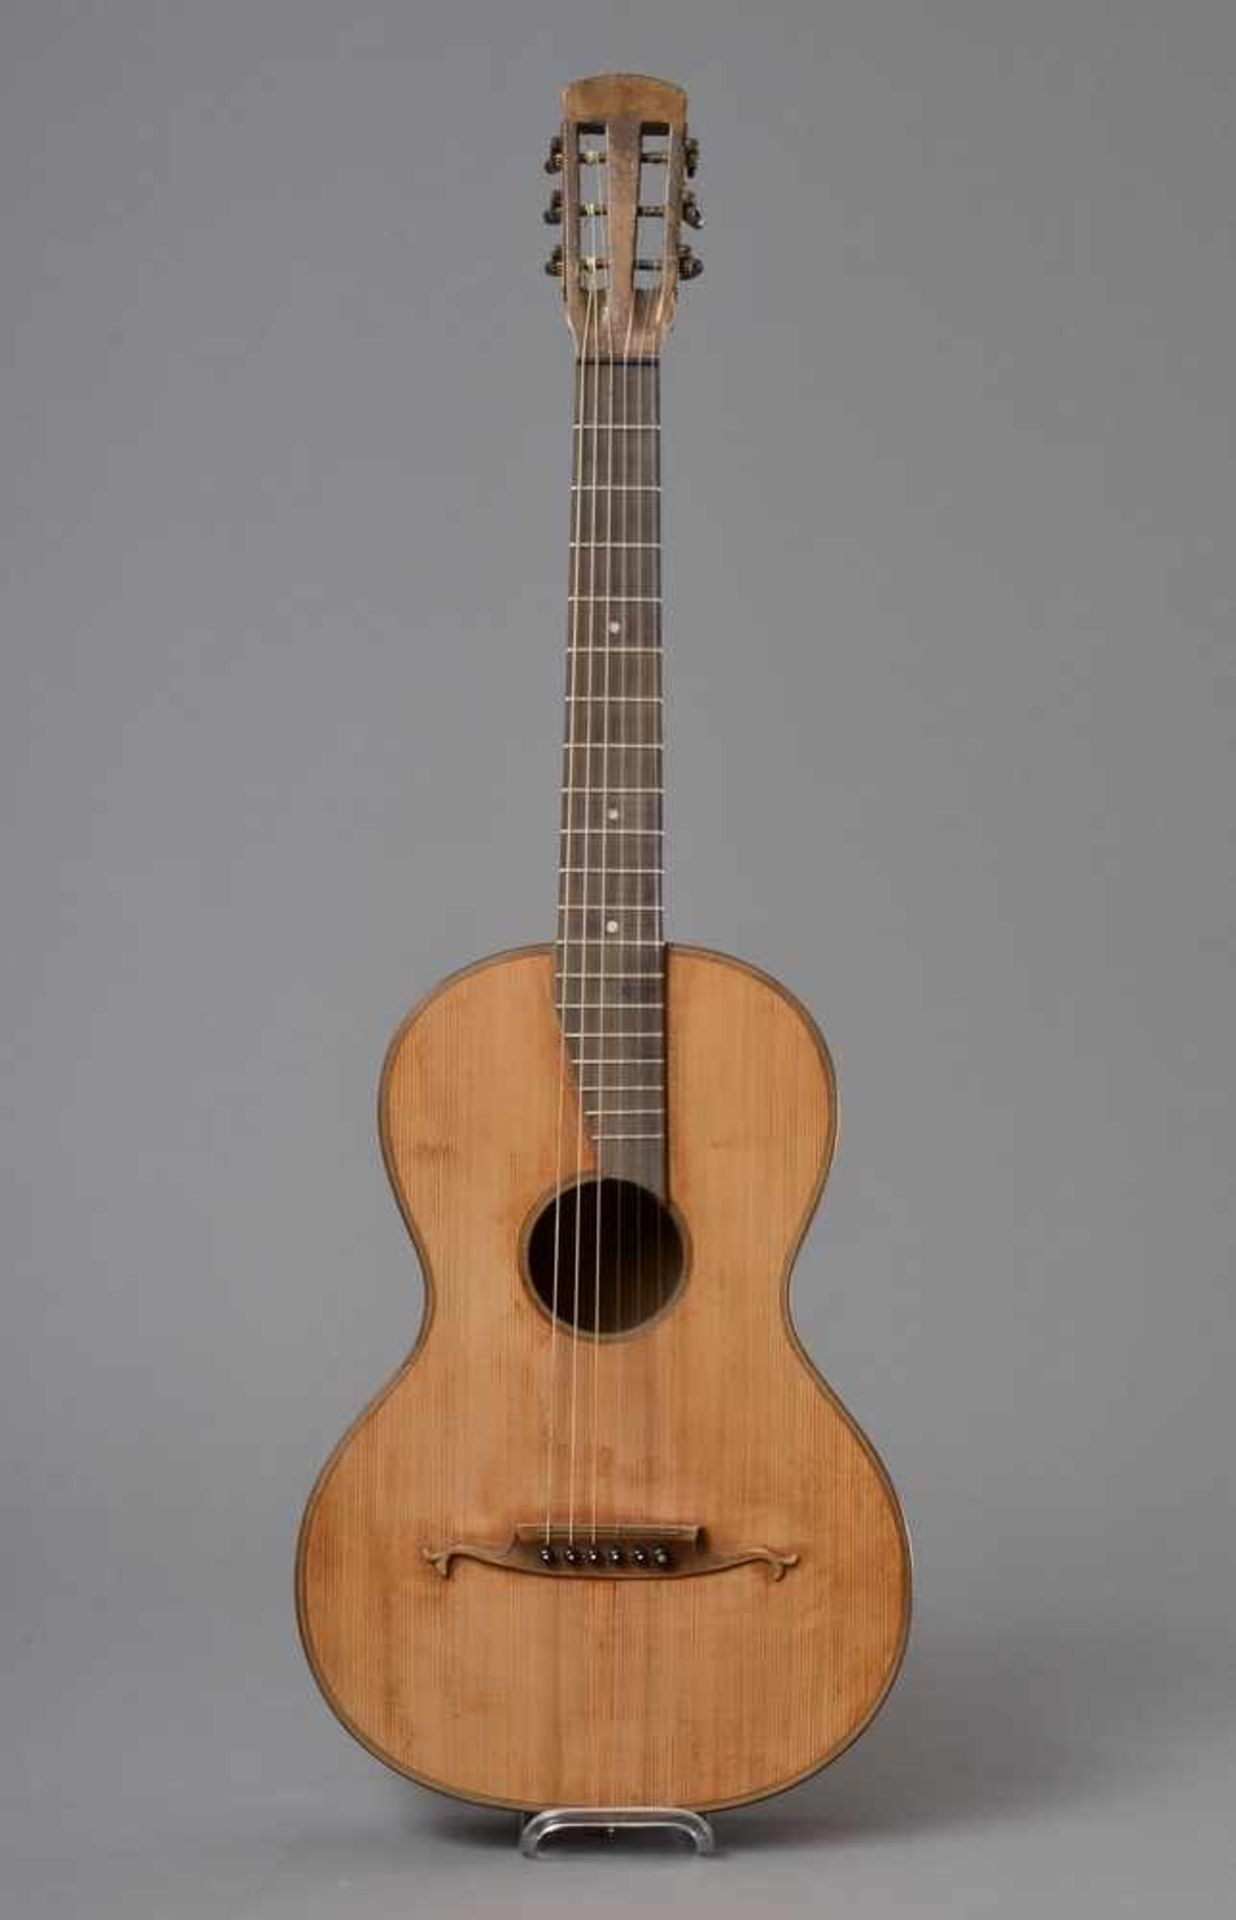 Historische Gitarre, Mensur 61,3cm, Gesamtlänge 93cm, Saitenhöhe 5mm, ca. 100 Jahre alt, spielbar - Image 7 of 7